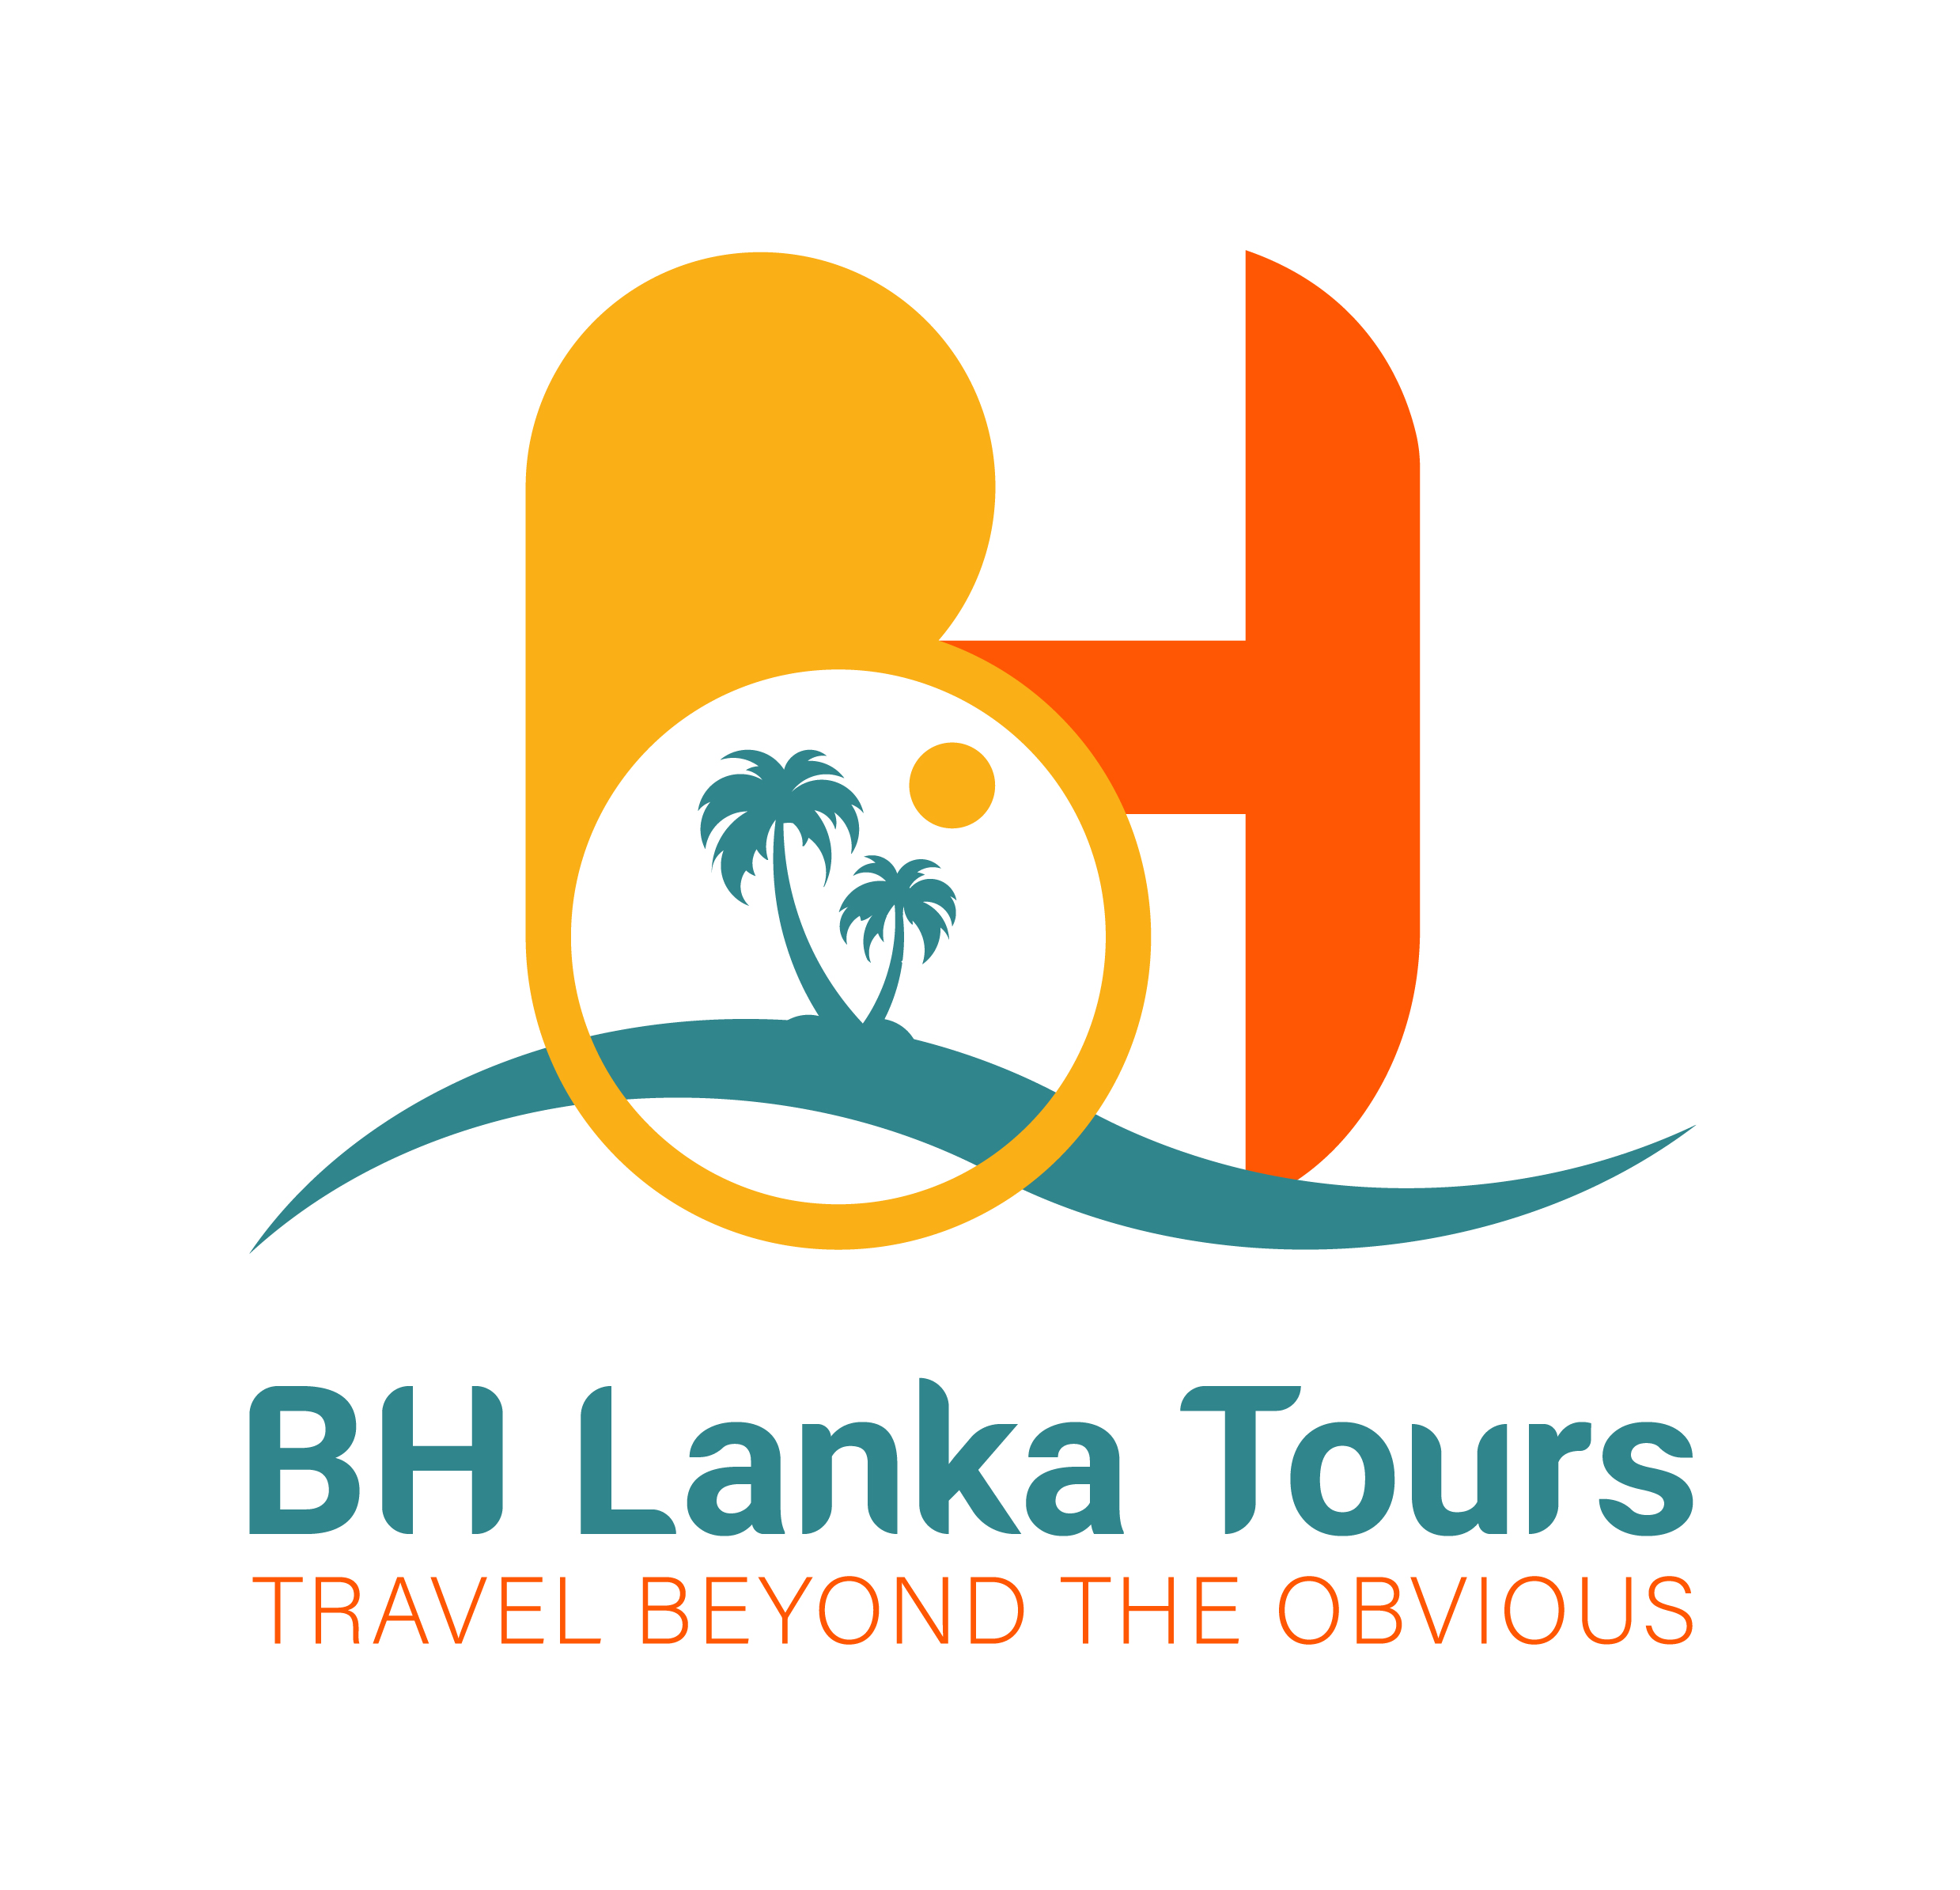 BH Lanka Tours